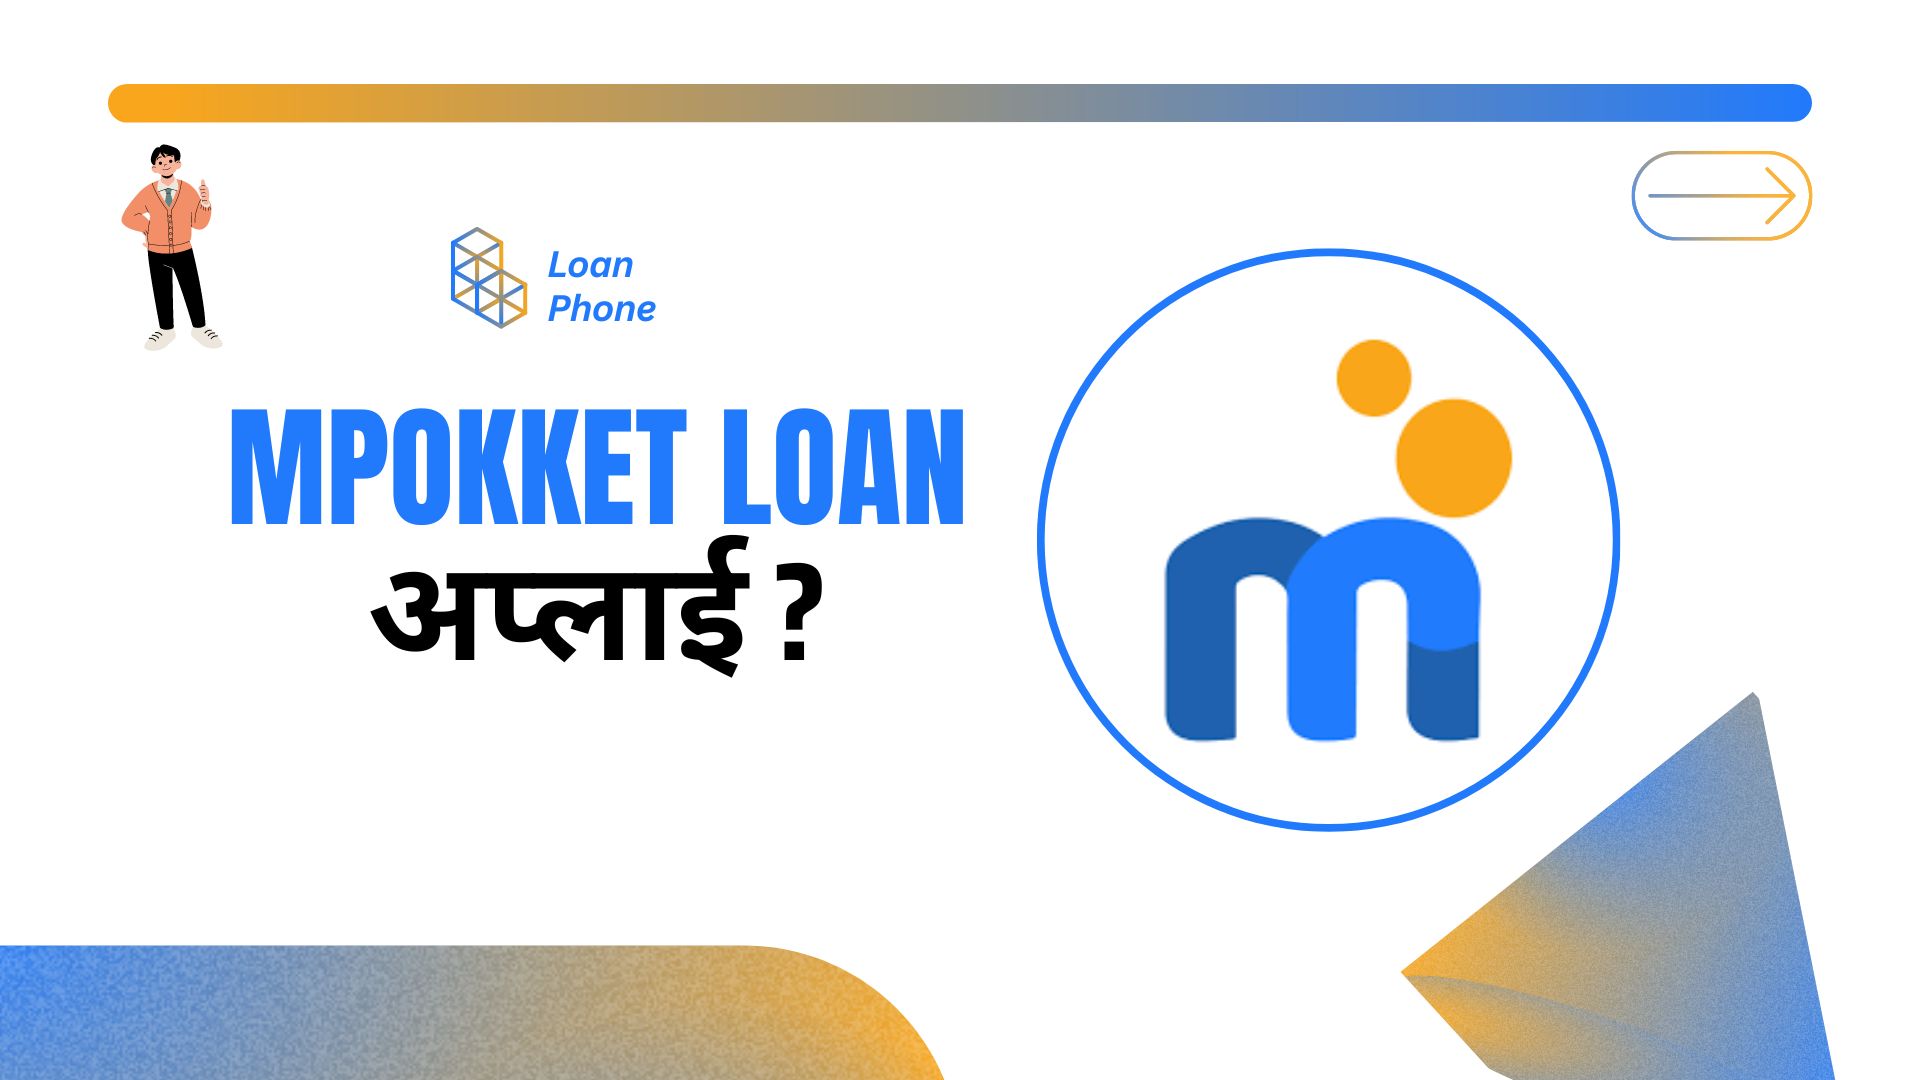 MPokket Loan App से लोन कैसे लें?